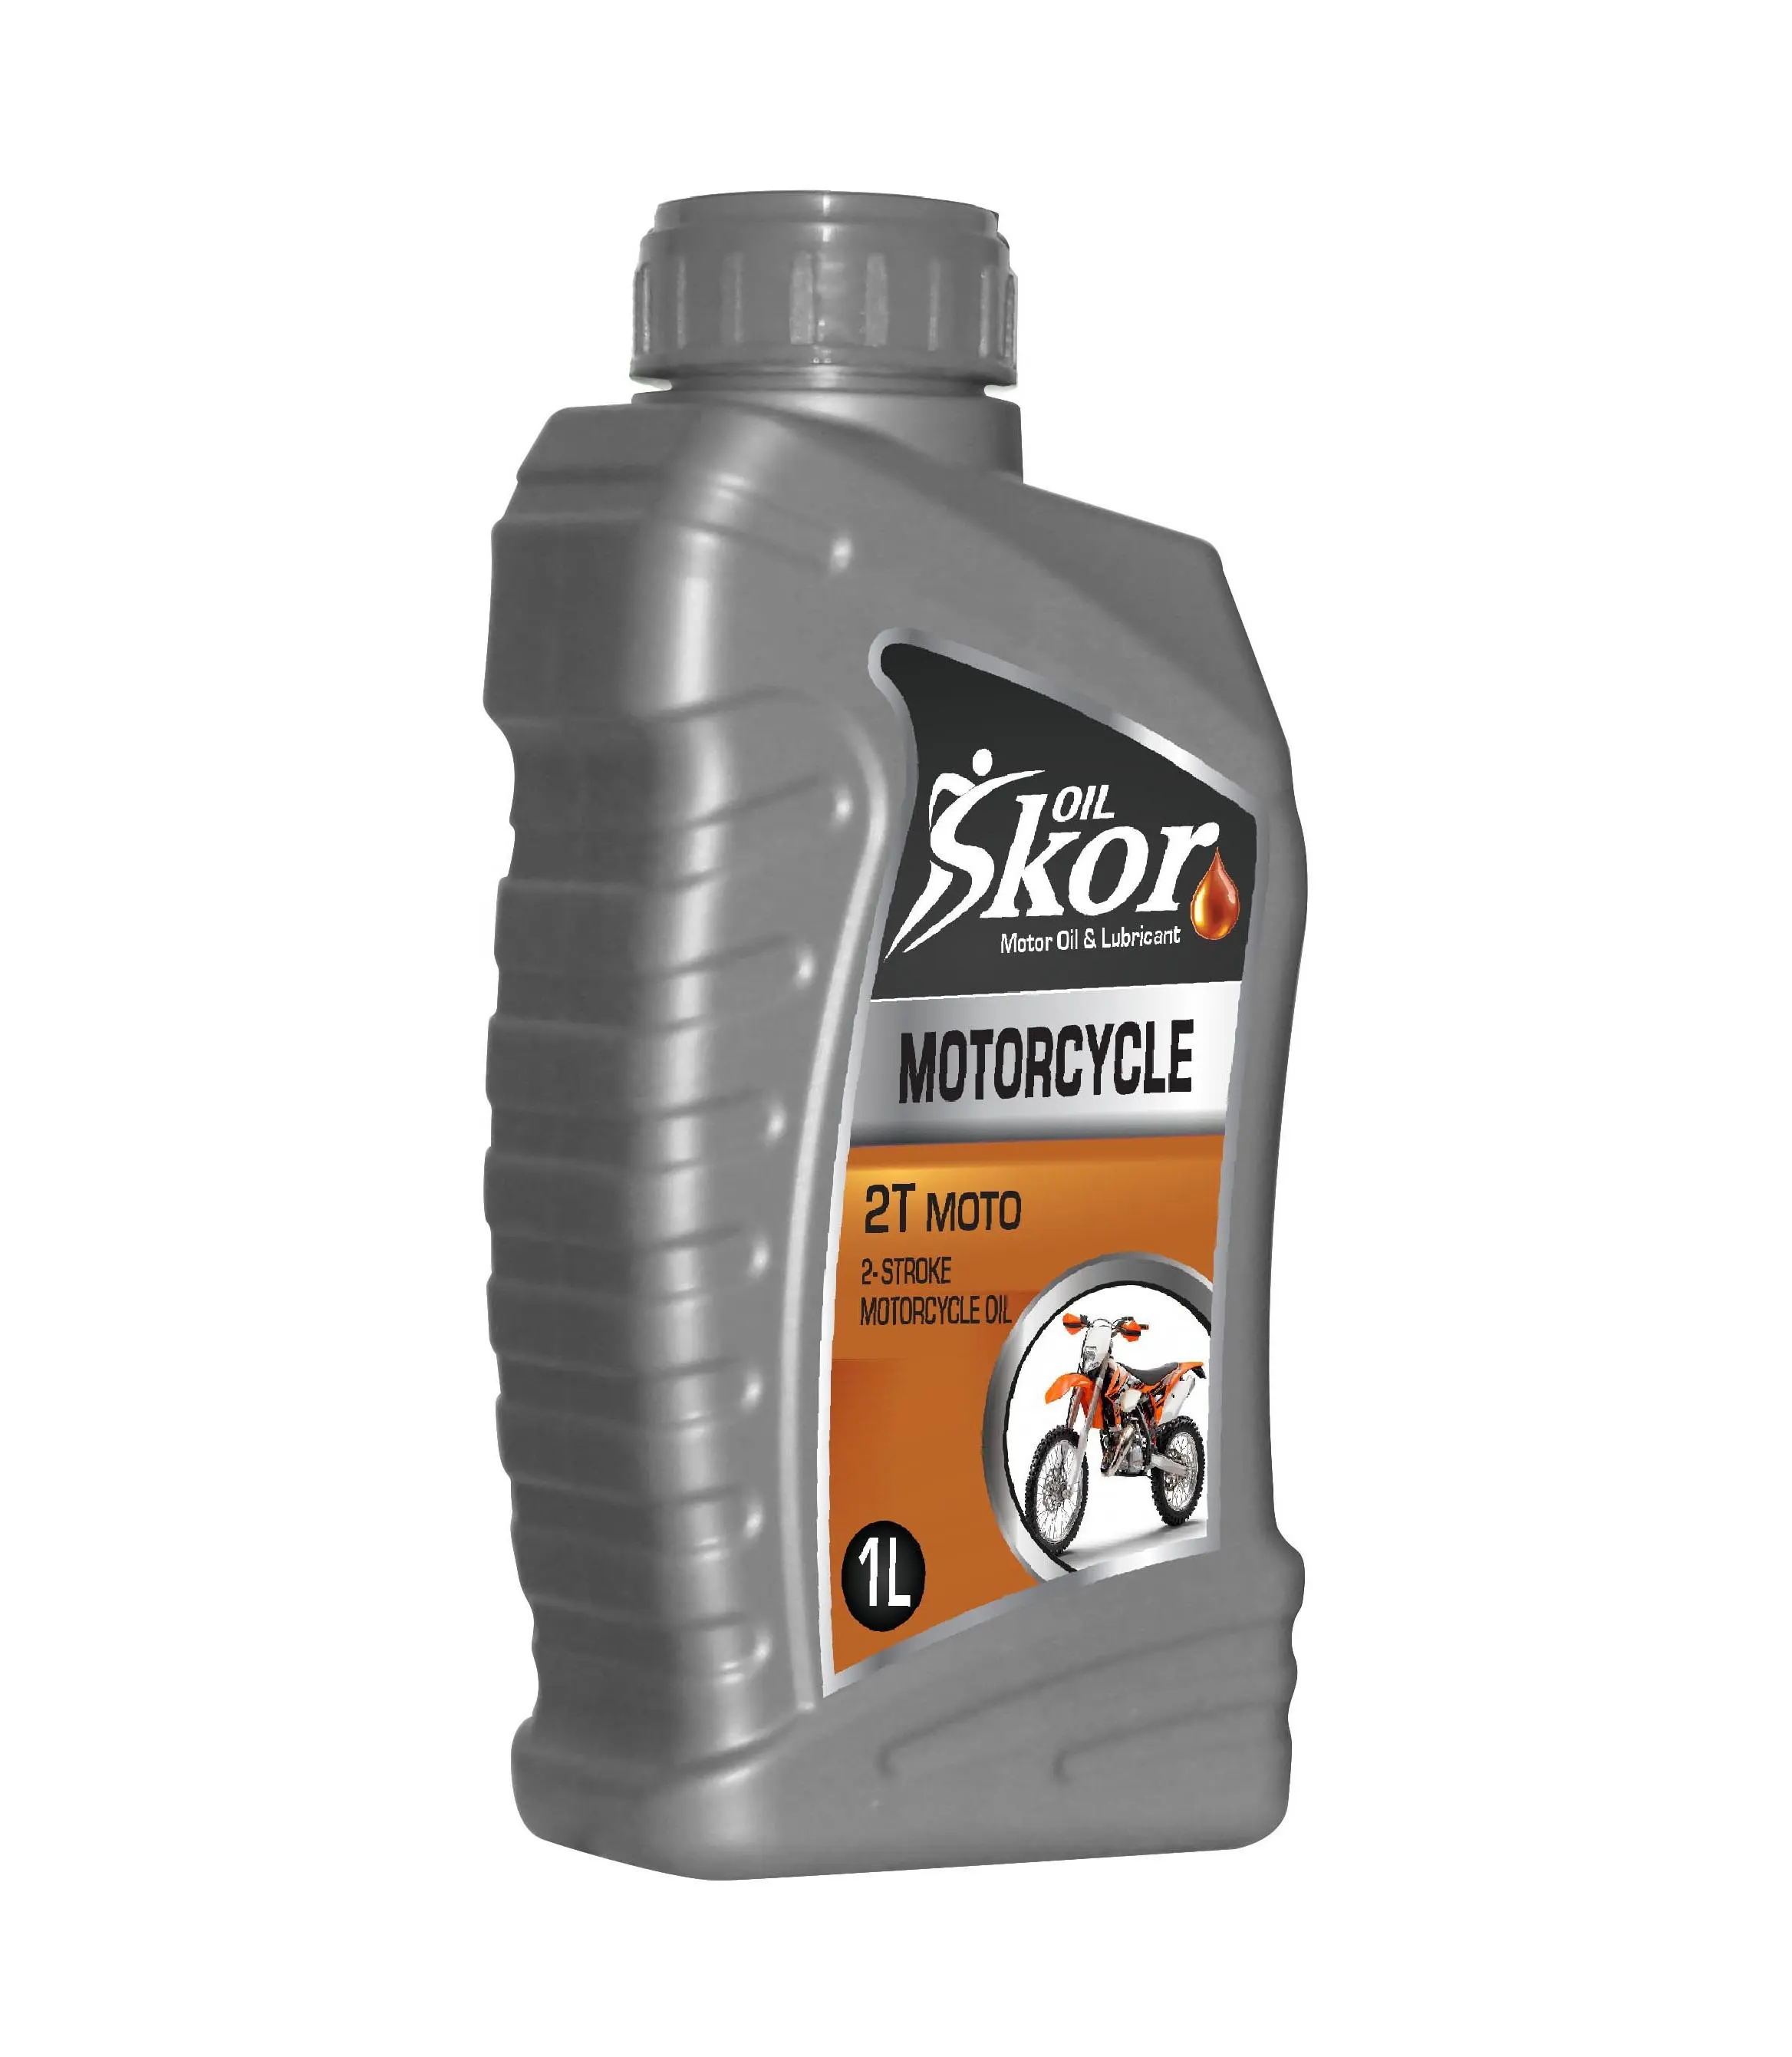 SkorOil 2T Moto 2 zamanlı motosiklet yağı 1 litre yüksek performanslı Motor yağı yağları Motor yağı